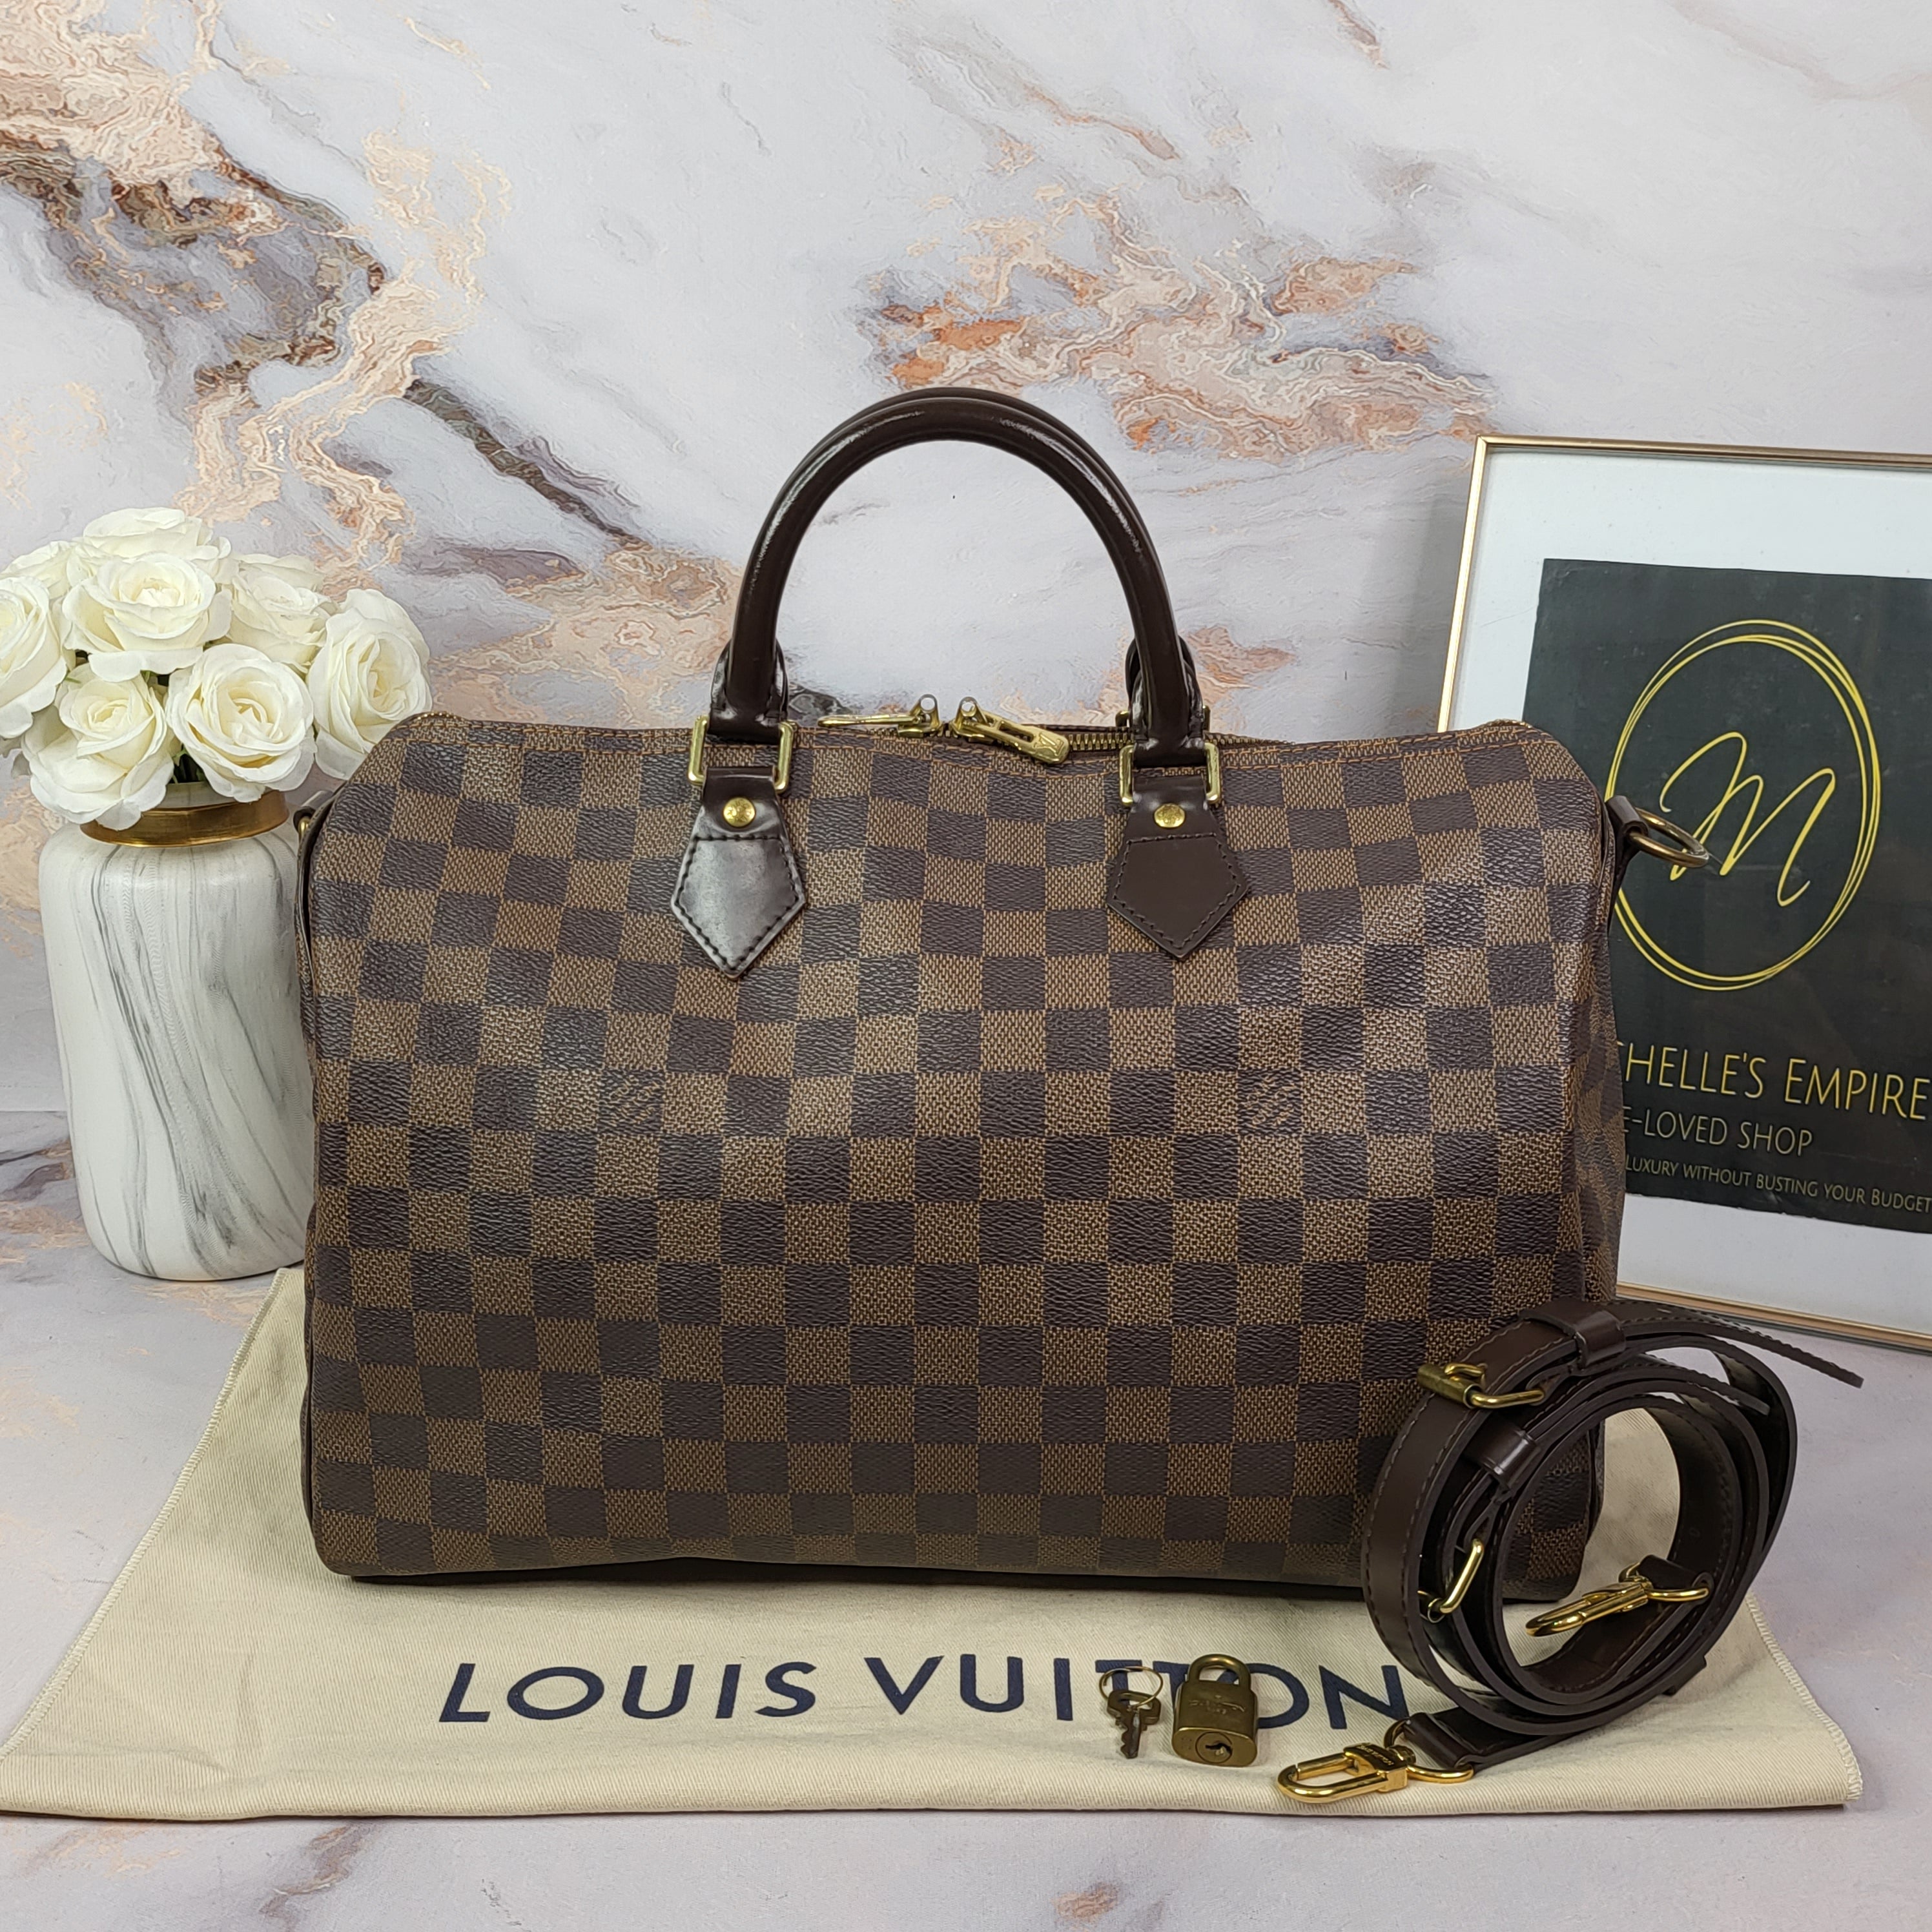 Louis Vuitton Damier Azur Portefeuille Wallet – Marichelle's Empire